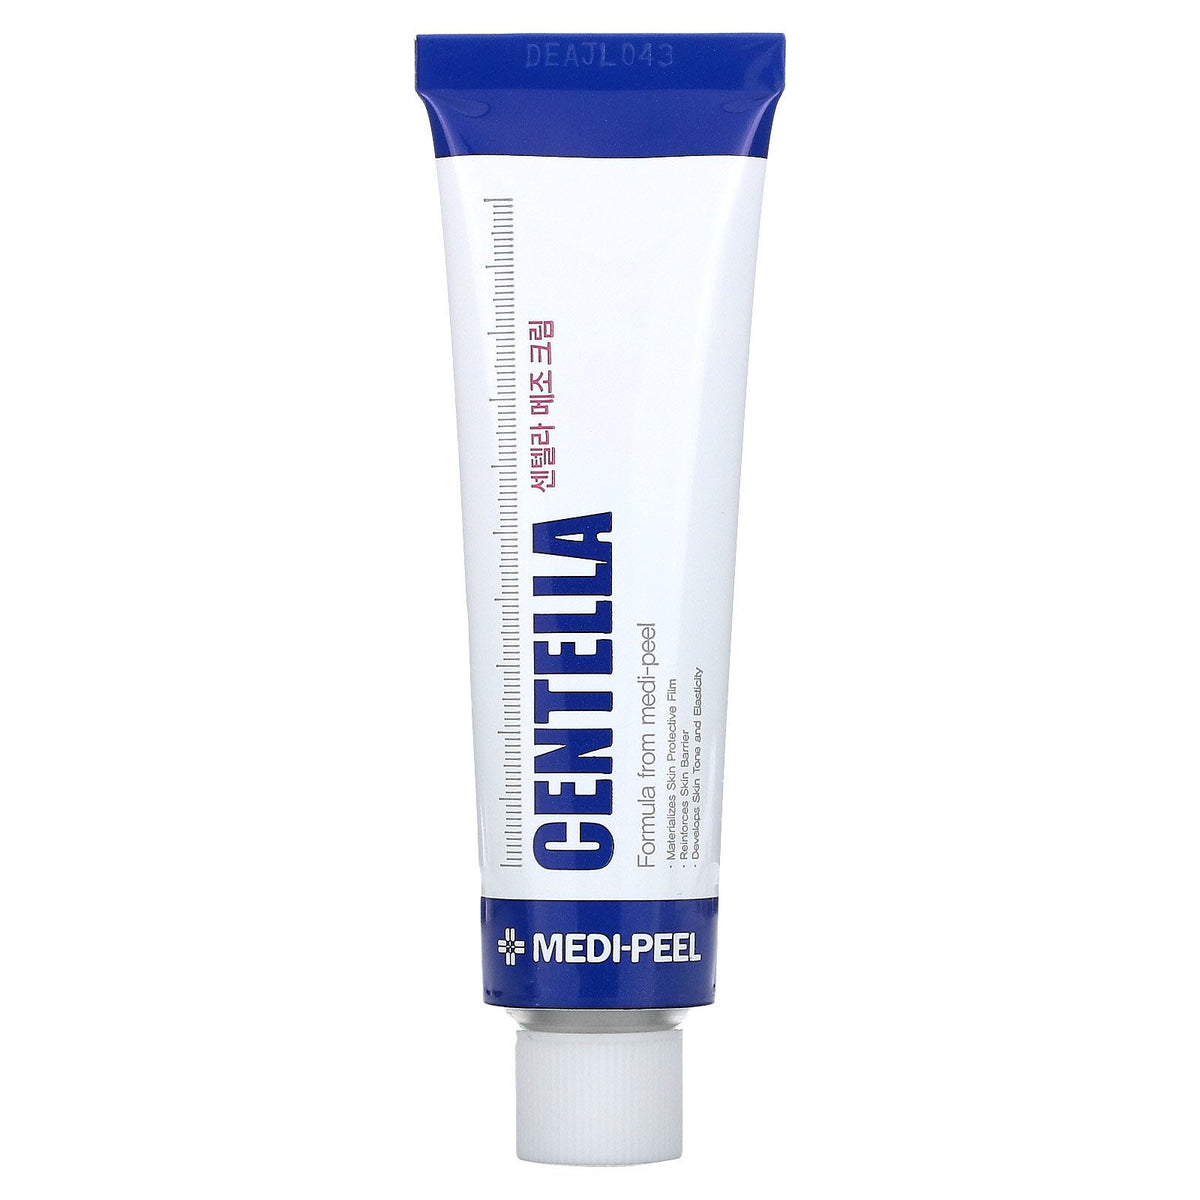 Kem trị mụn Medi-Peel Centella Mezzo Cream có tác dụng cung cấp độ ẩm và làm mềm làn da hiệu quả như thế nào?
